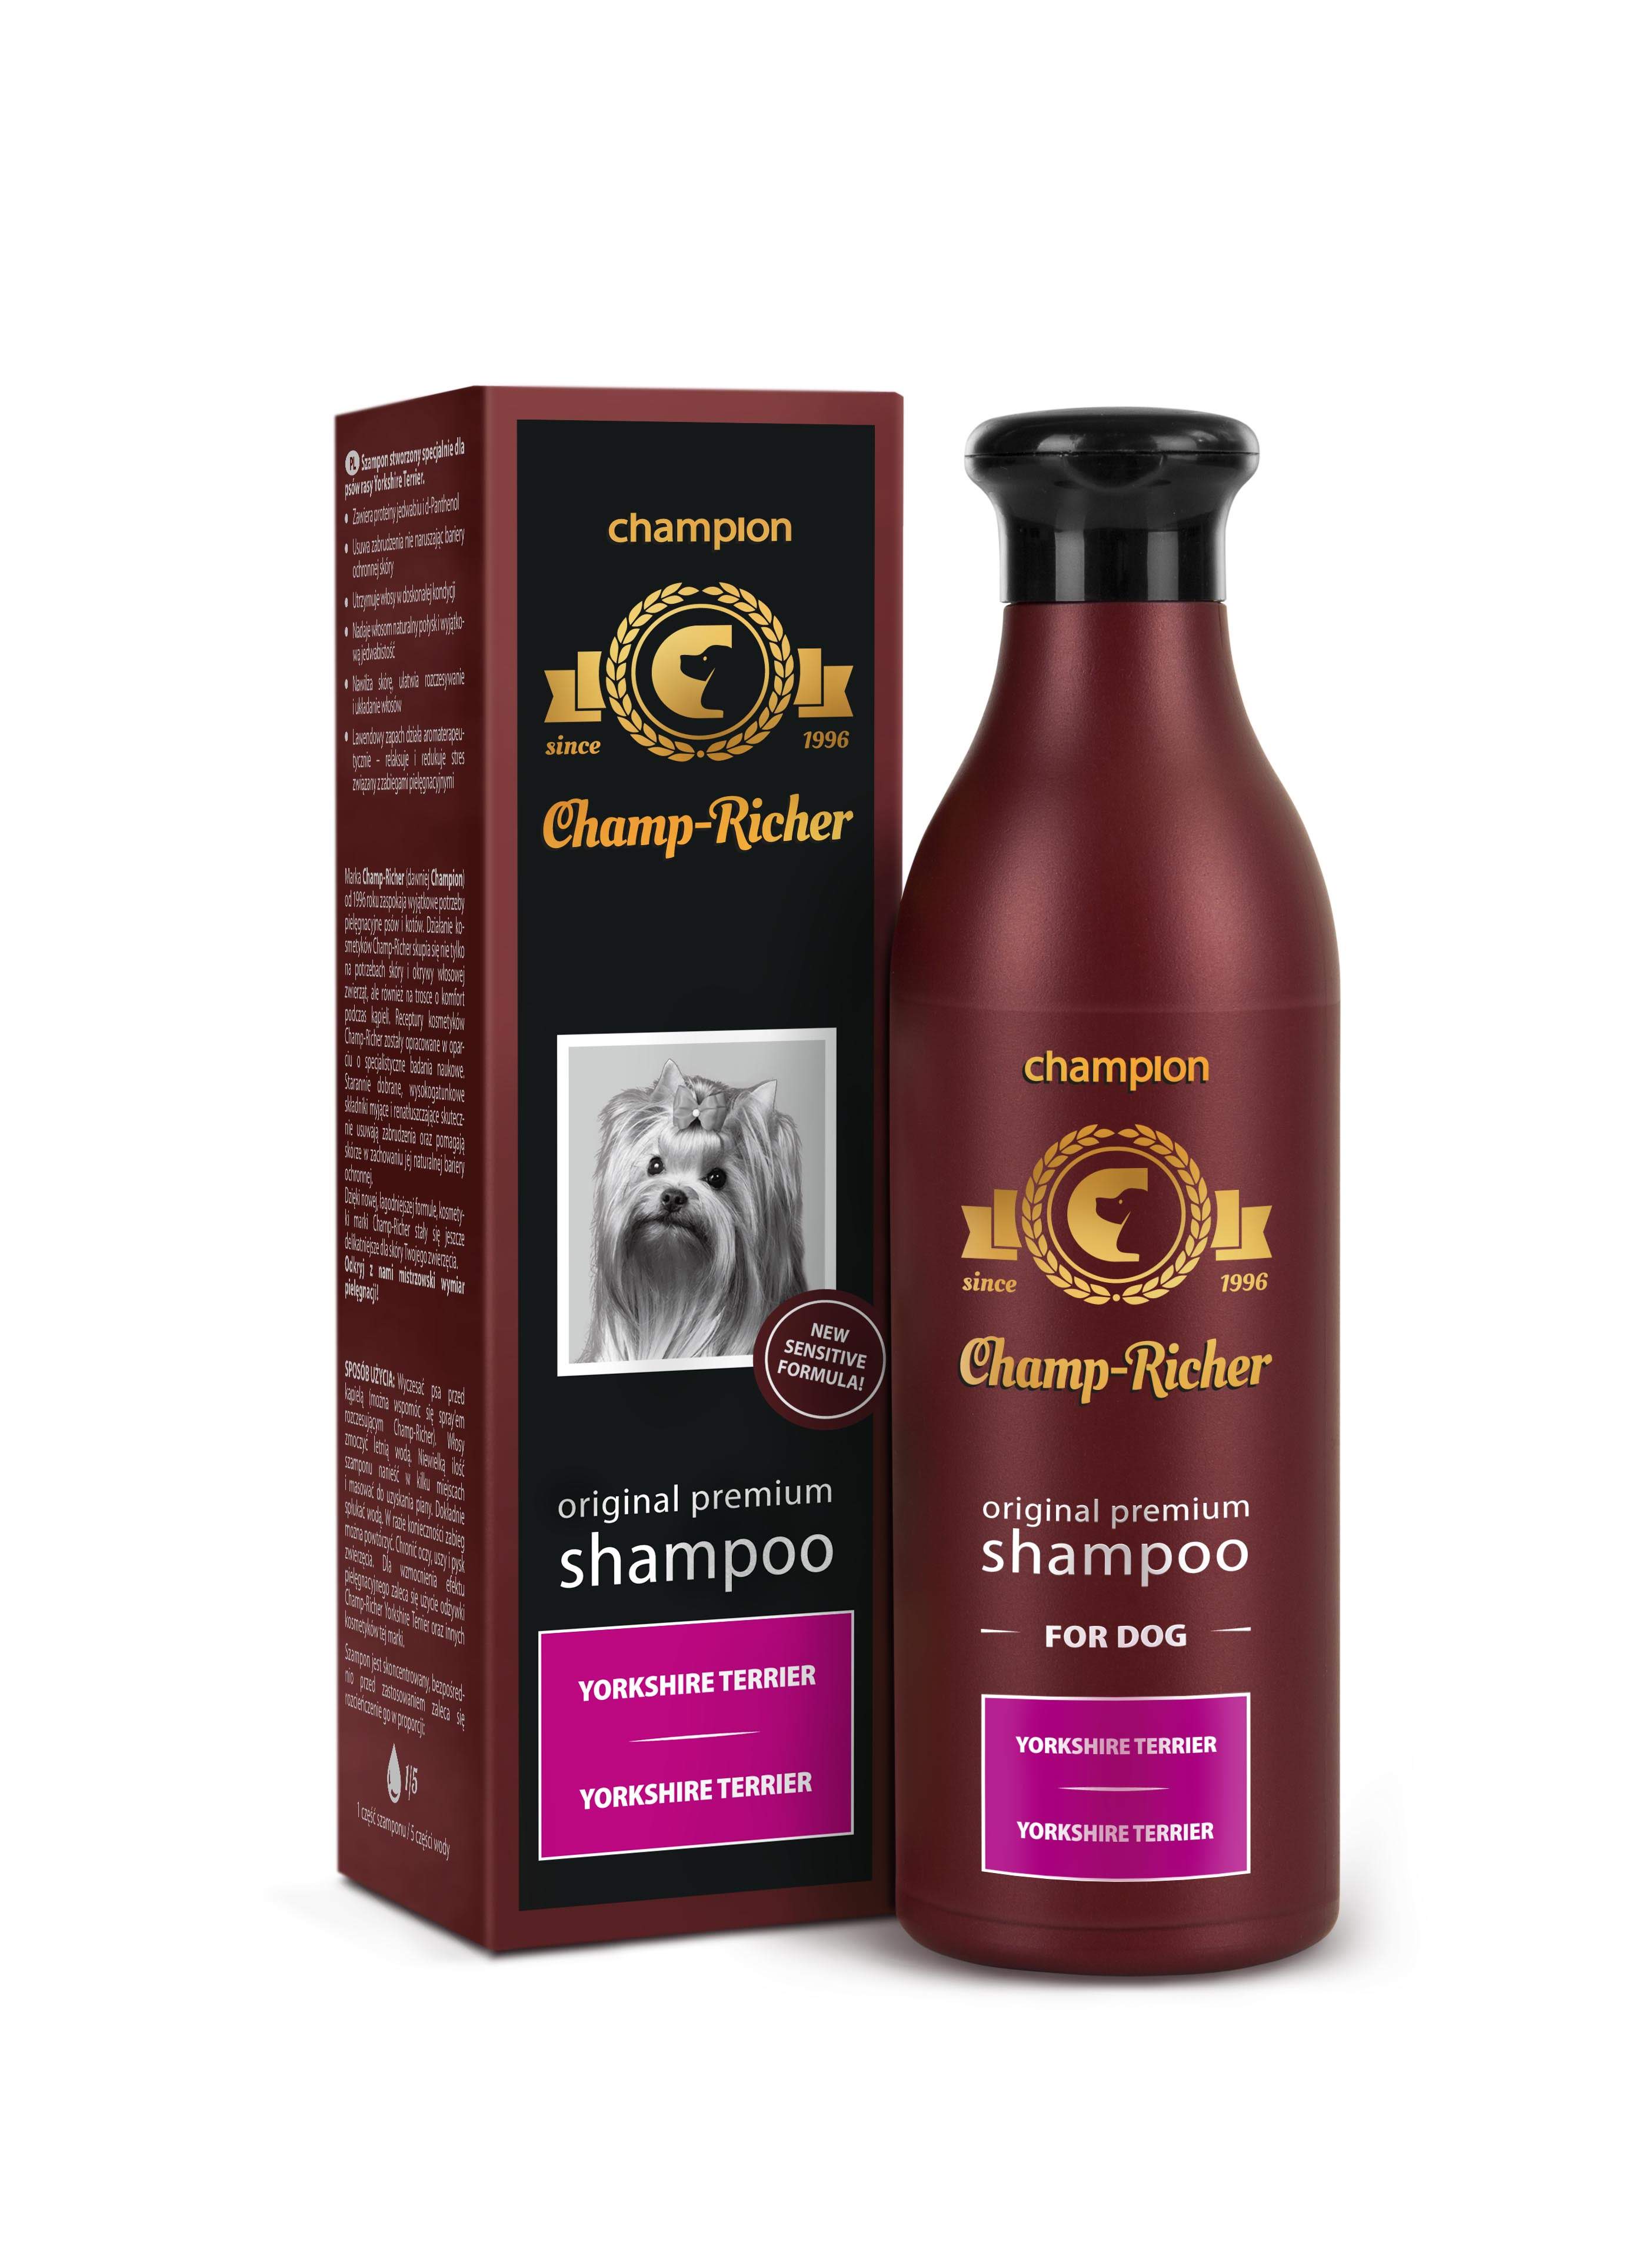 (CHAMPION) Yorkshire Terrier Shampoo 250ml - CHAMP-REICHER